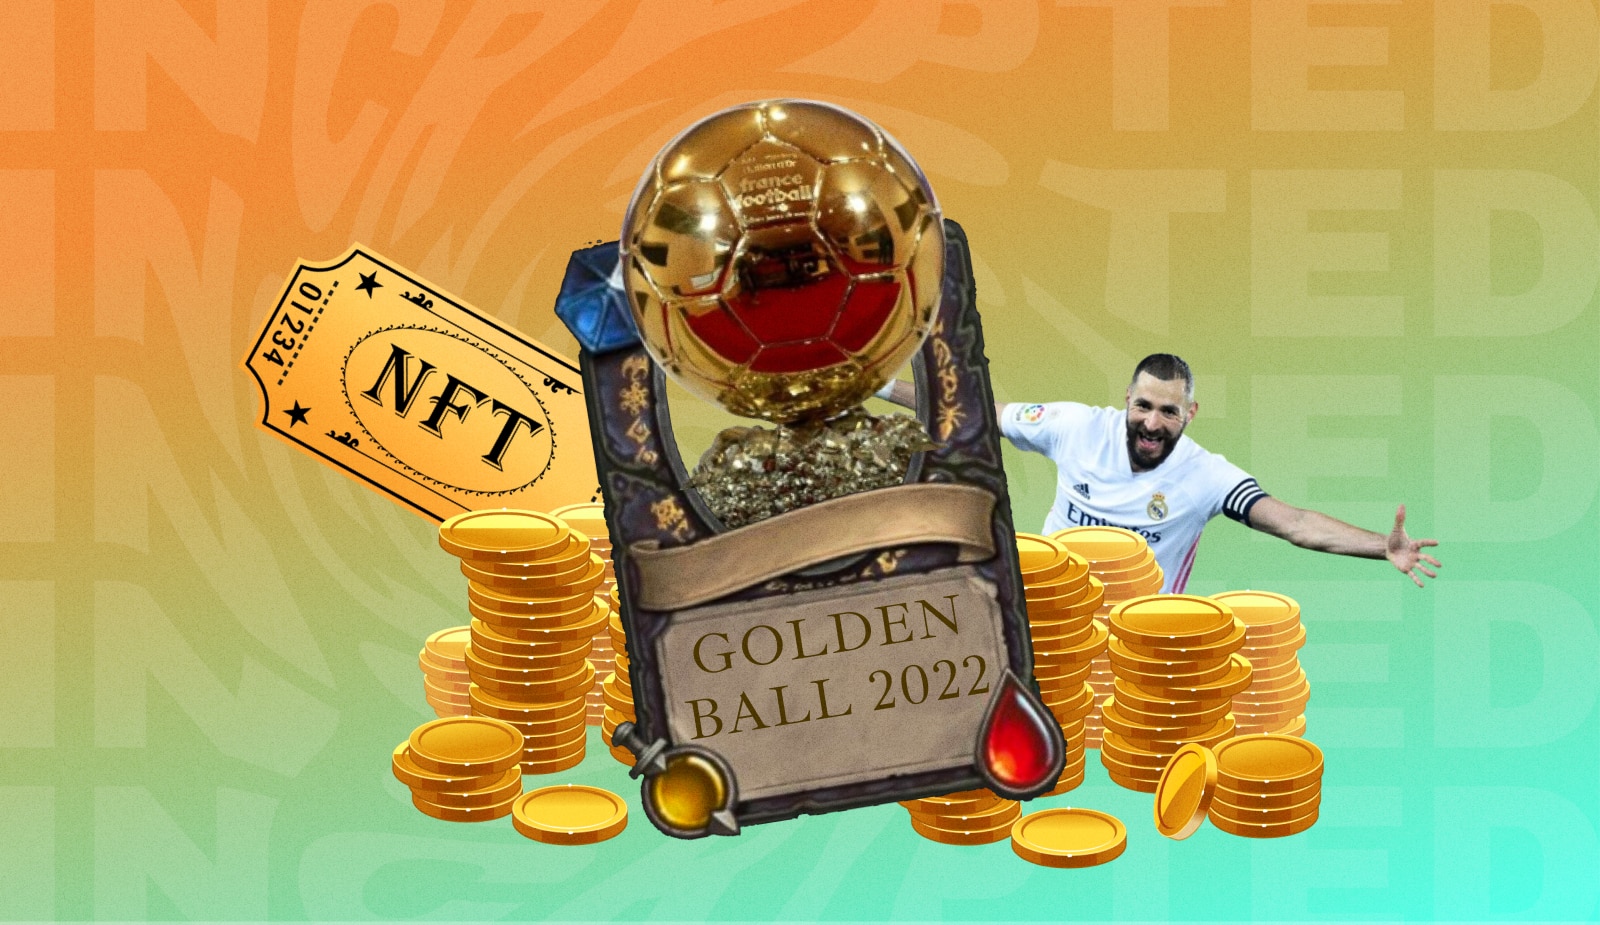 Карим Бензема получил памятный NFT к Золотому мячу 2022. Заглавный коллаж новости.